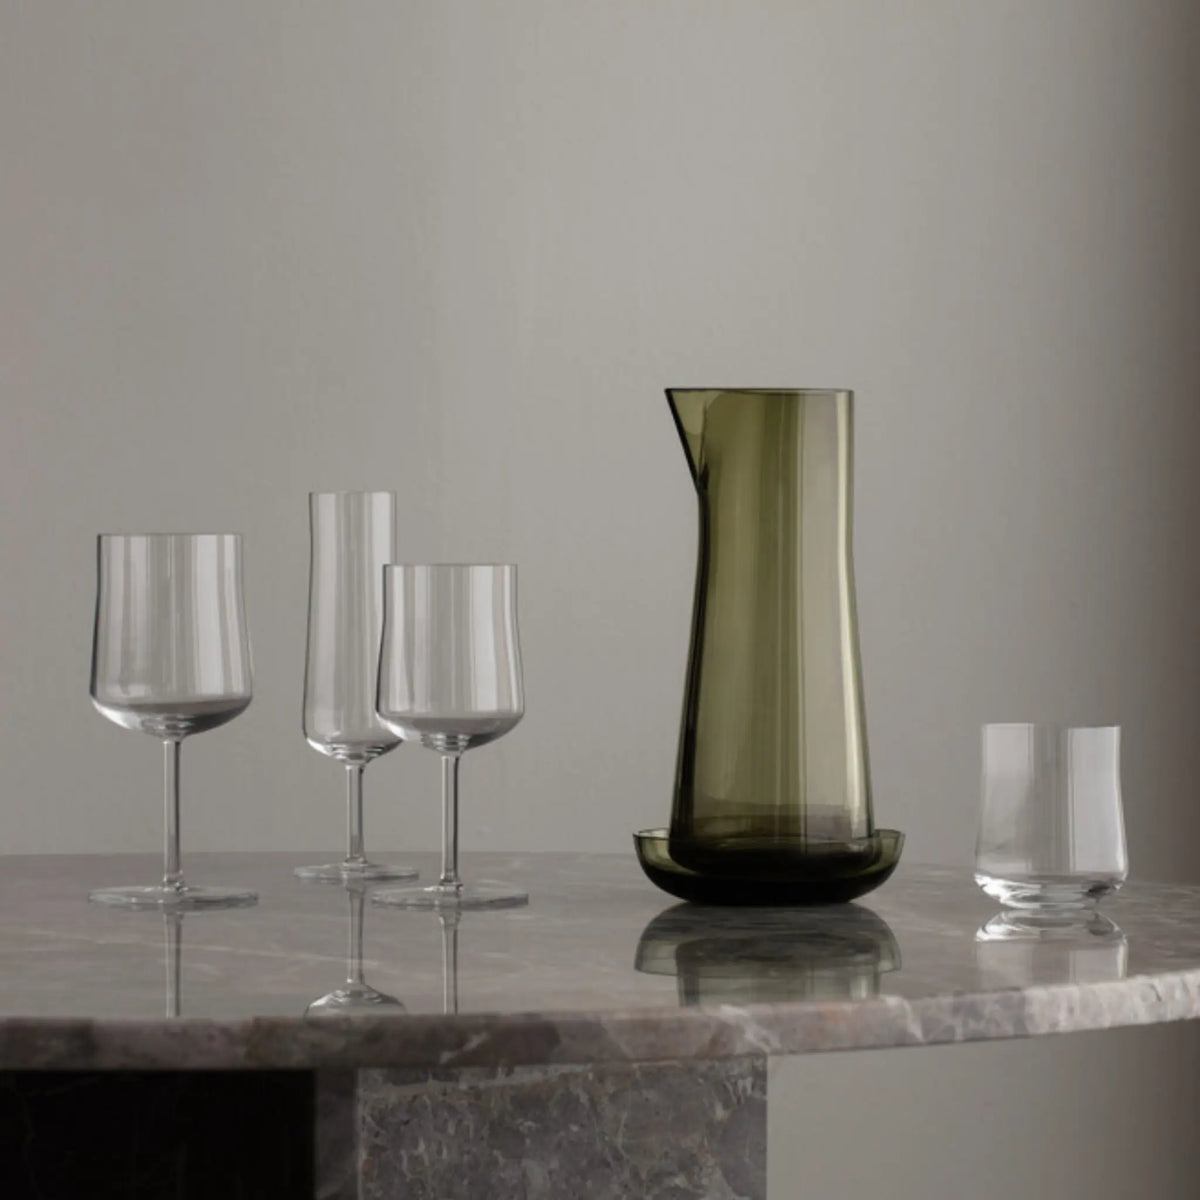 Orrefors | Informal Medium Glass - Set of 2 Orrefors